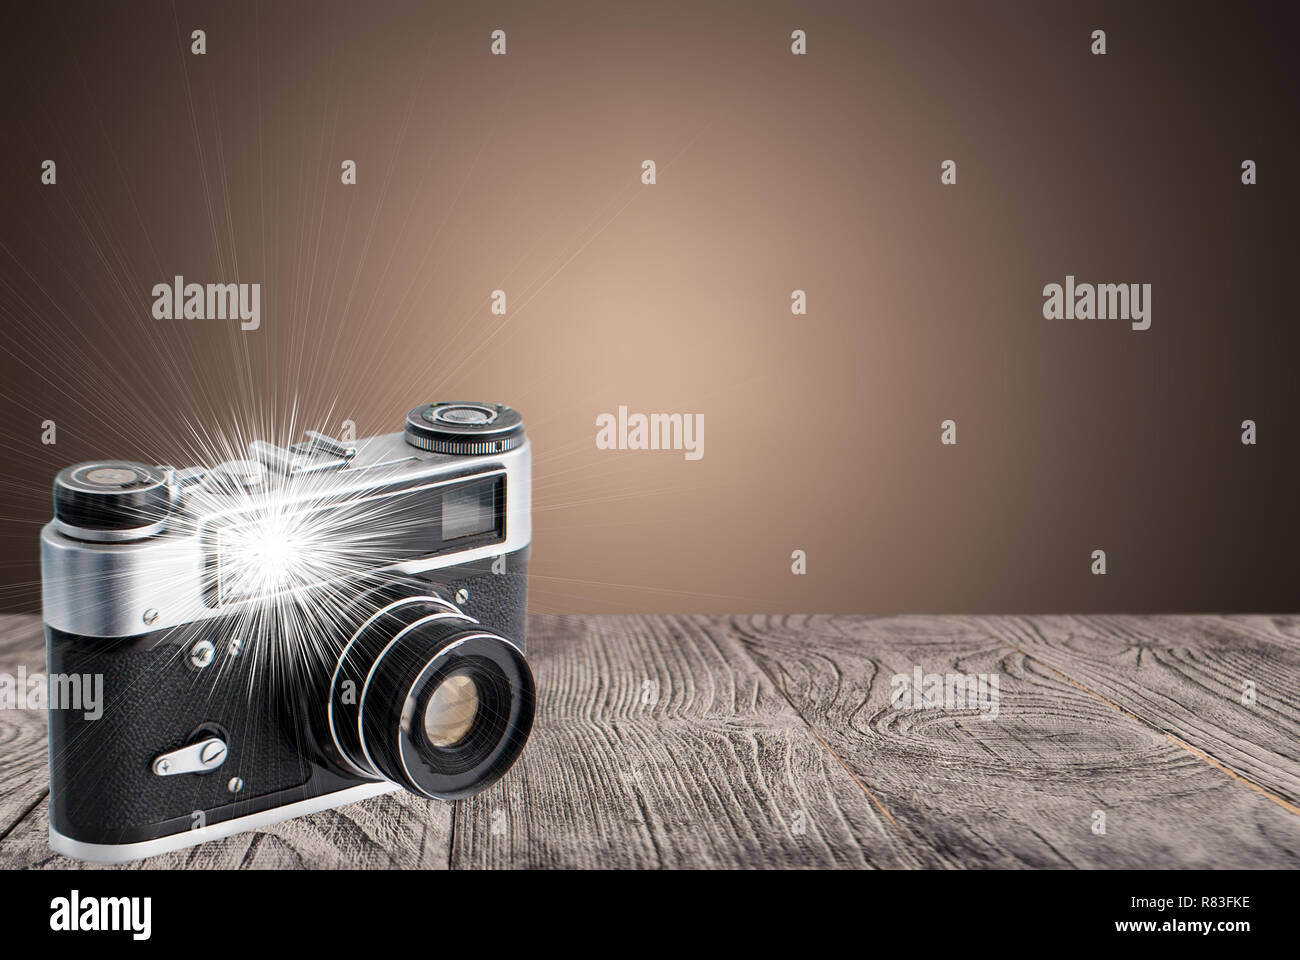 Appareil photo rétro sur une surface en bois avec un flash intégré Banque D'Images